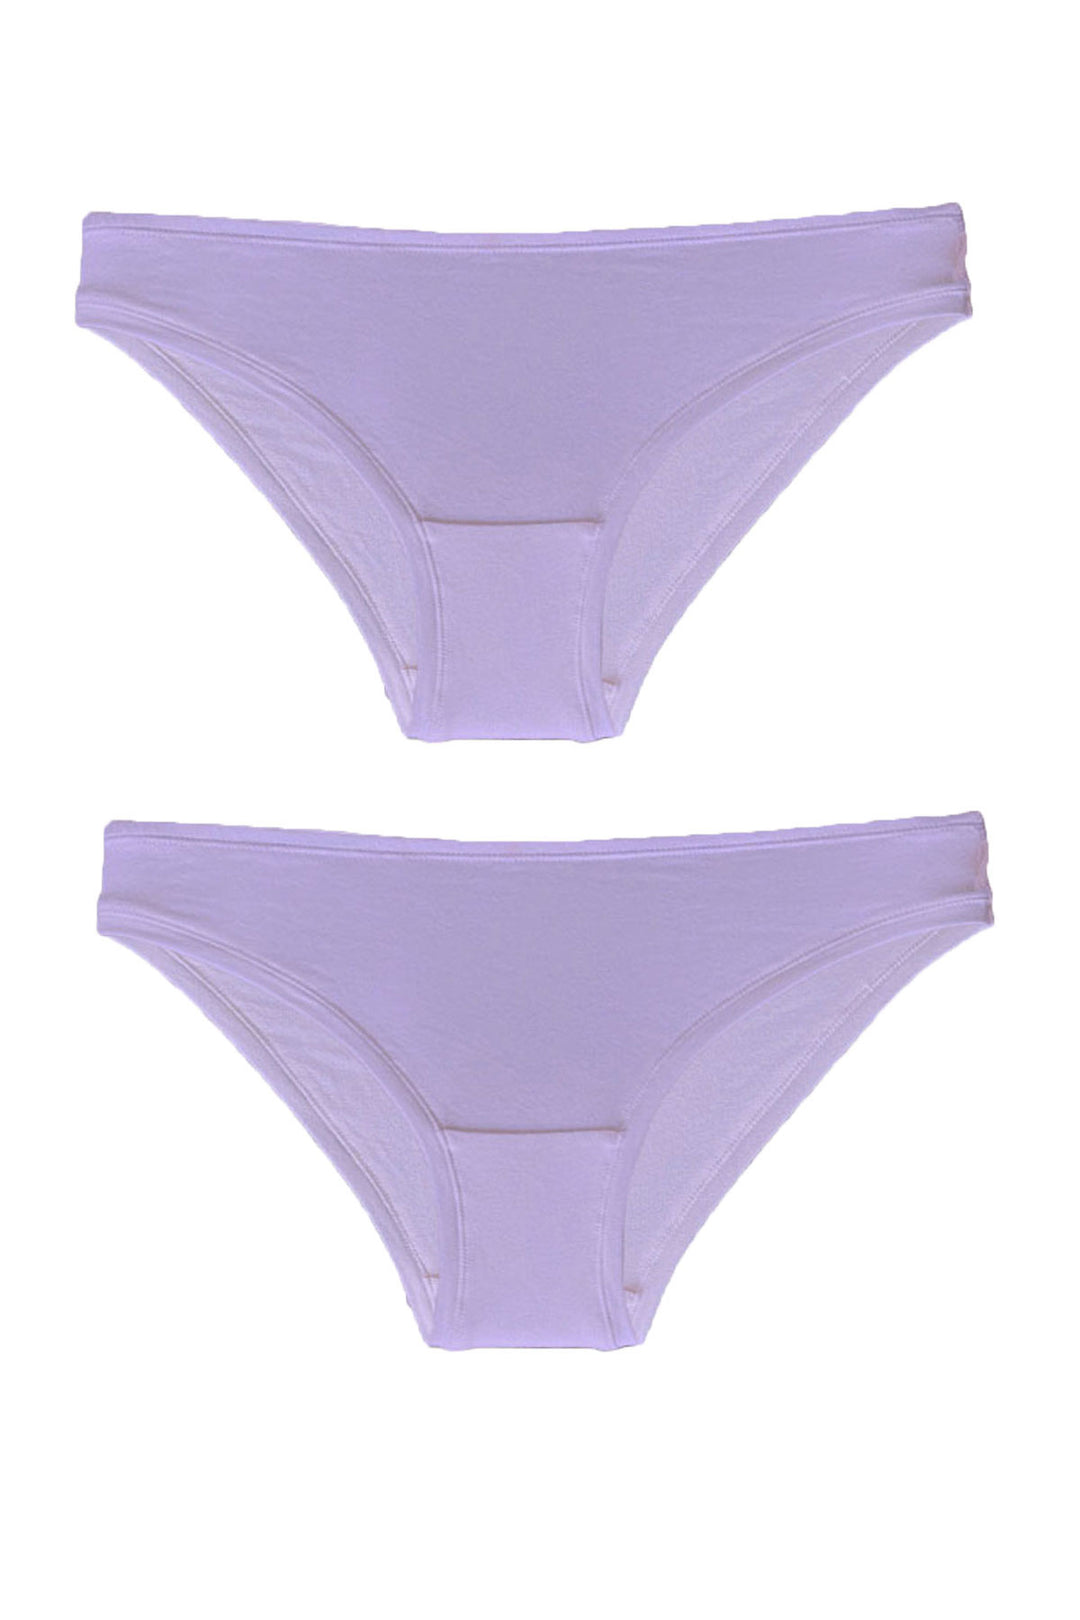 Bikini brief duo (Only Lavender Left)